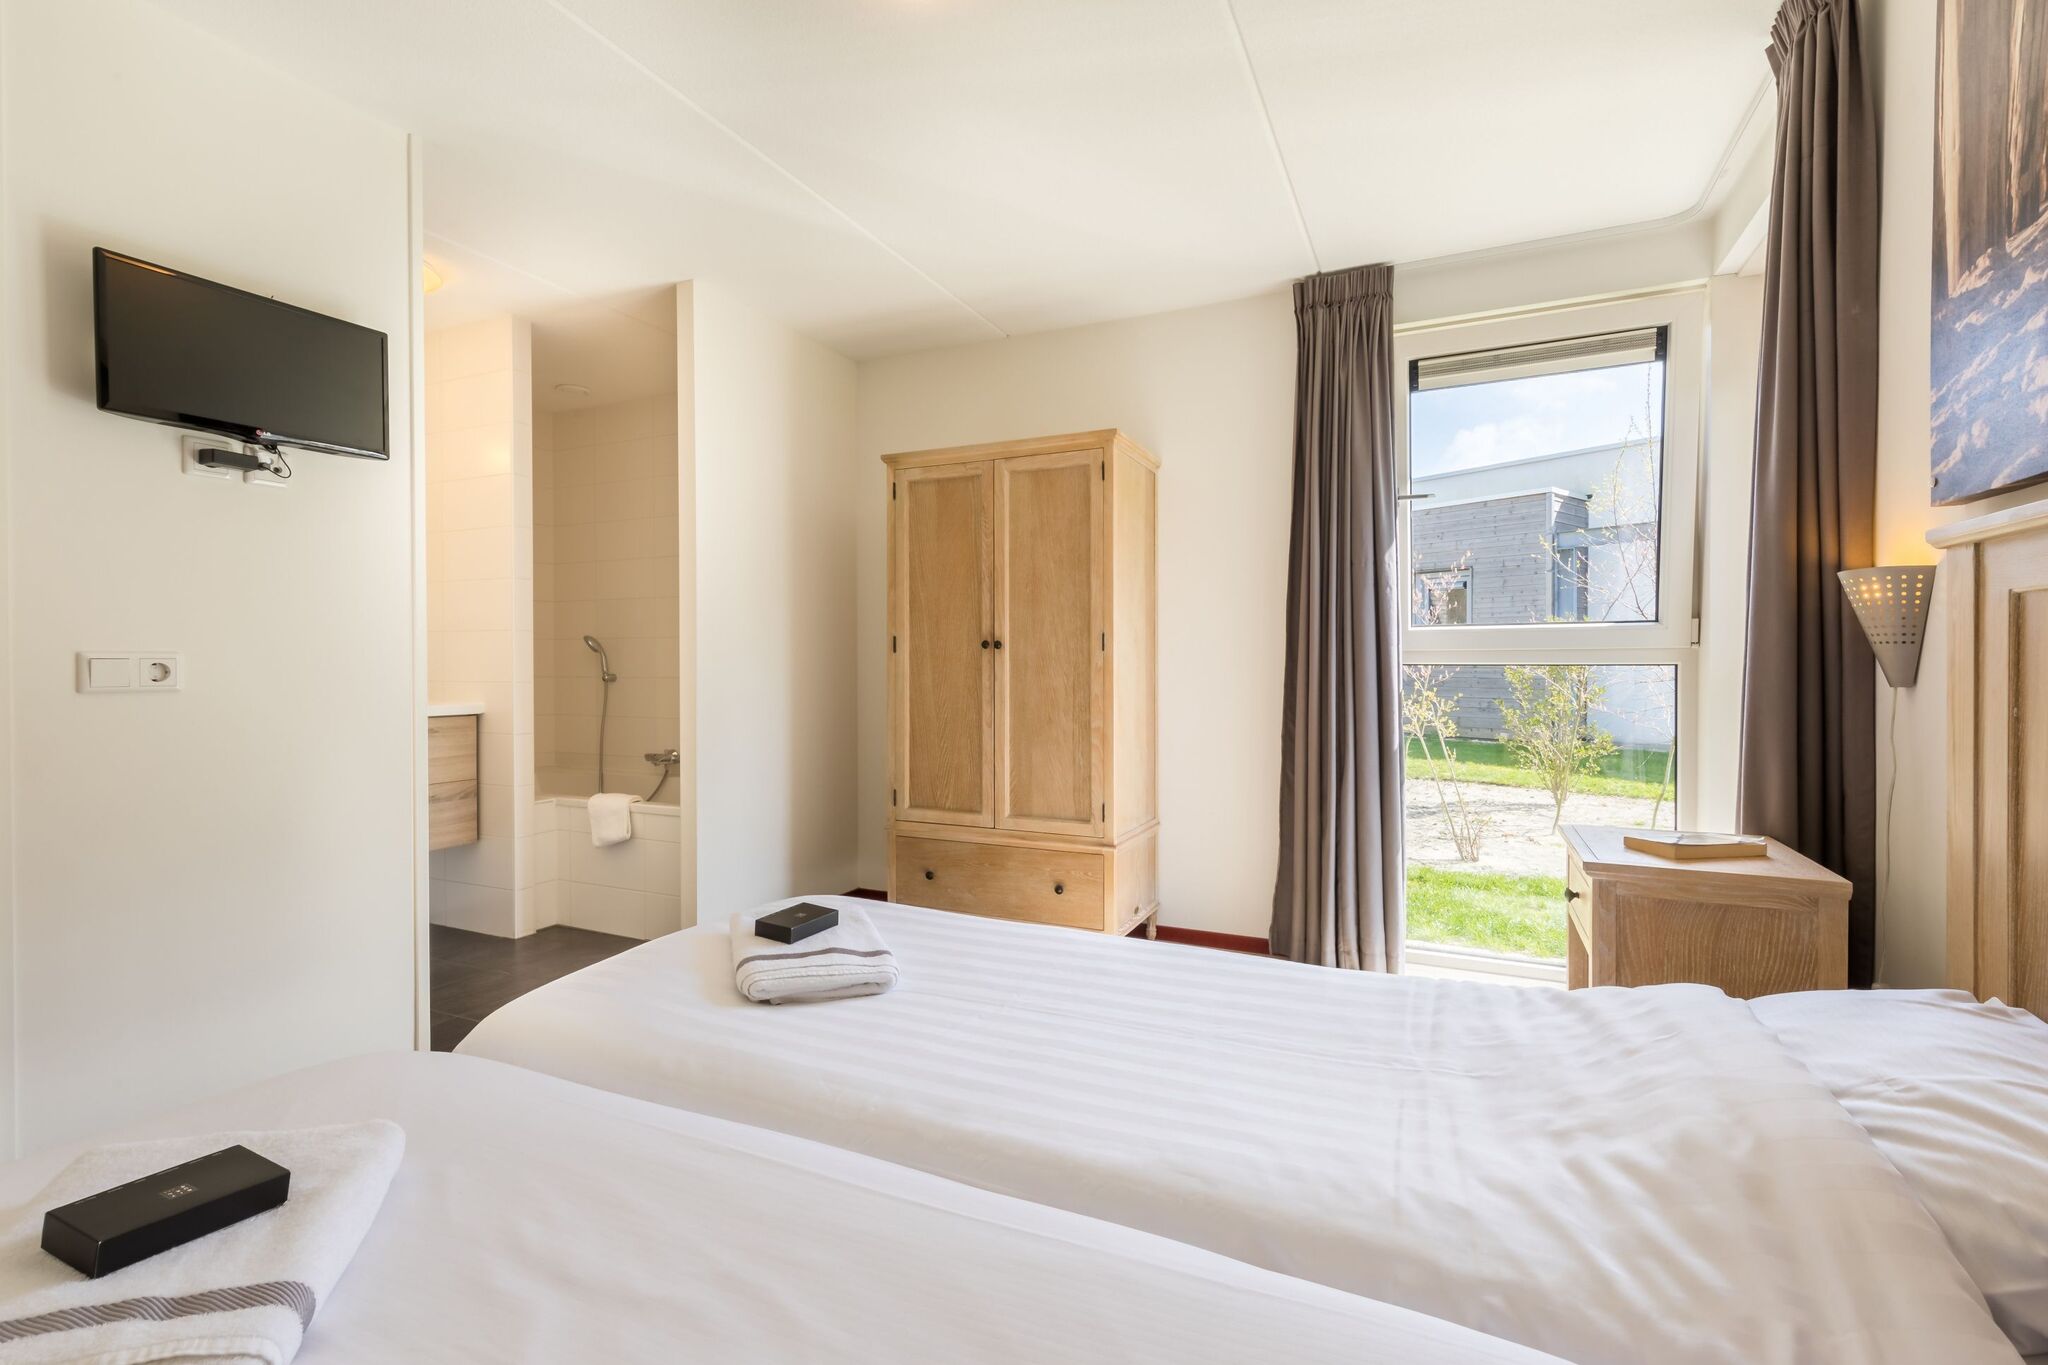 Maison de luxe avec deux salles de bain, sur Texel, la mer à 2km